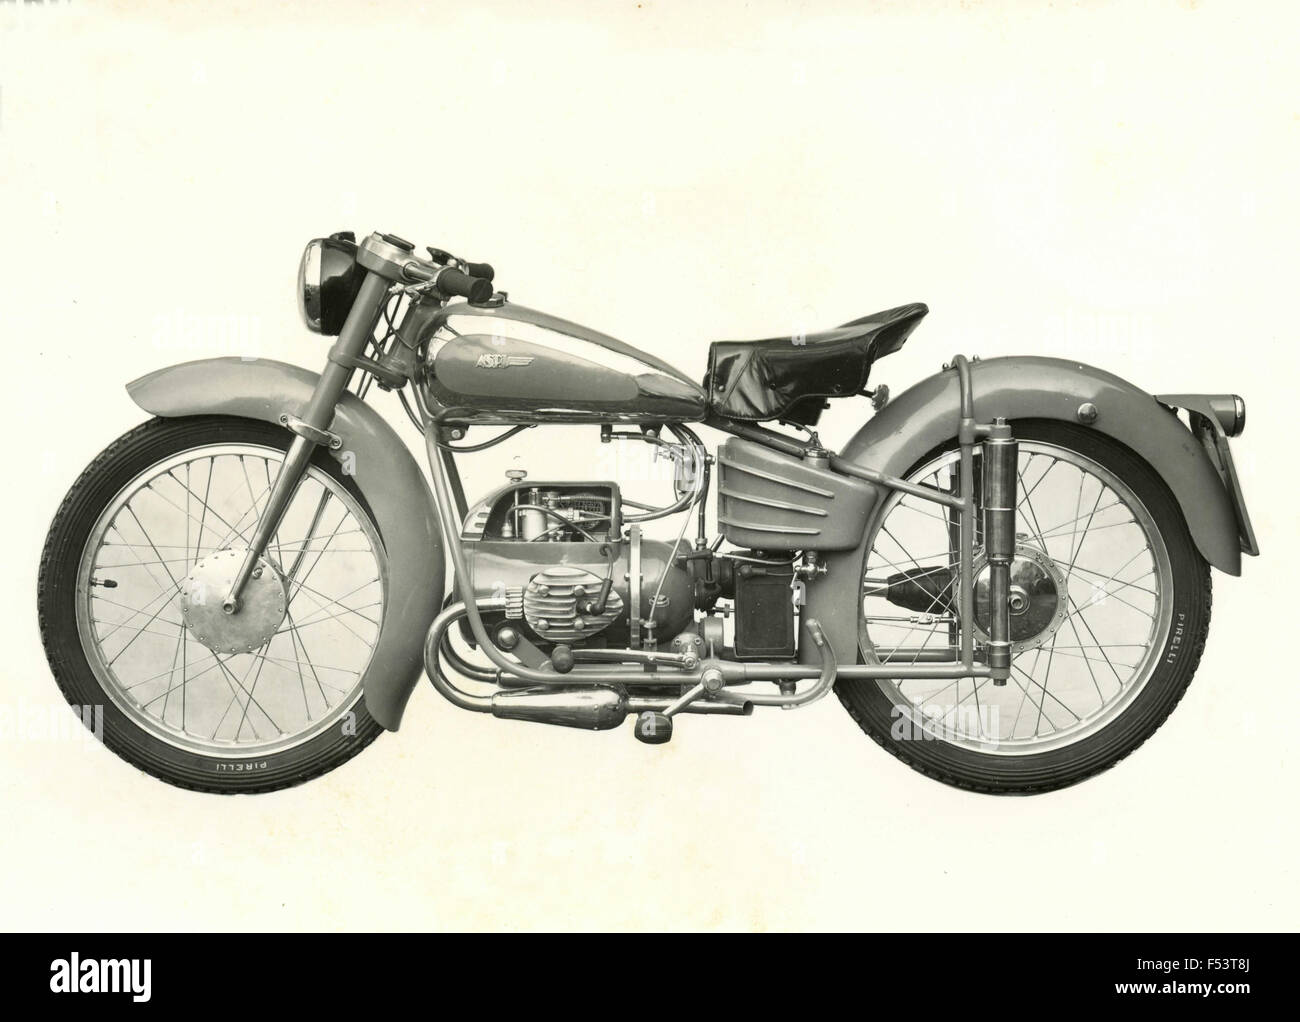 Motorcycle ASPI , Italy Stock Photo